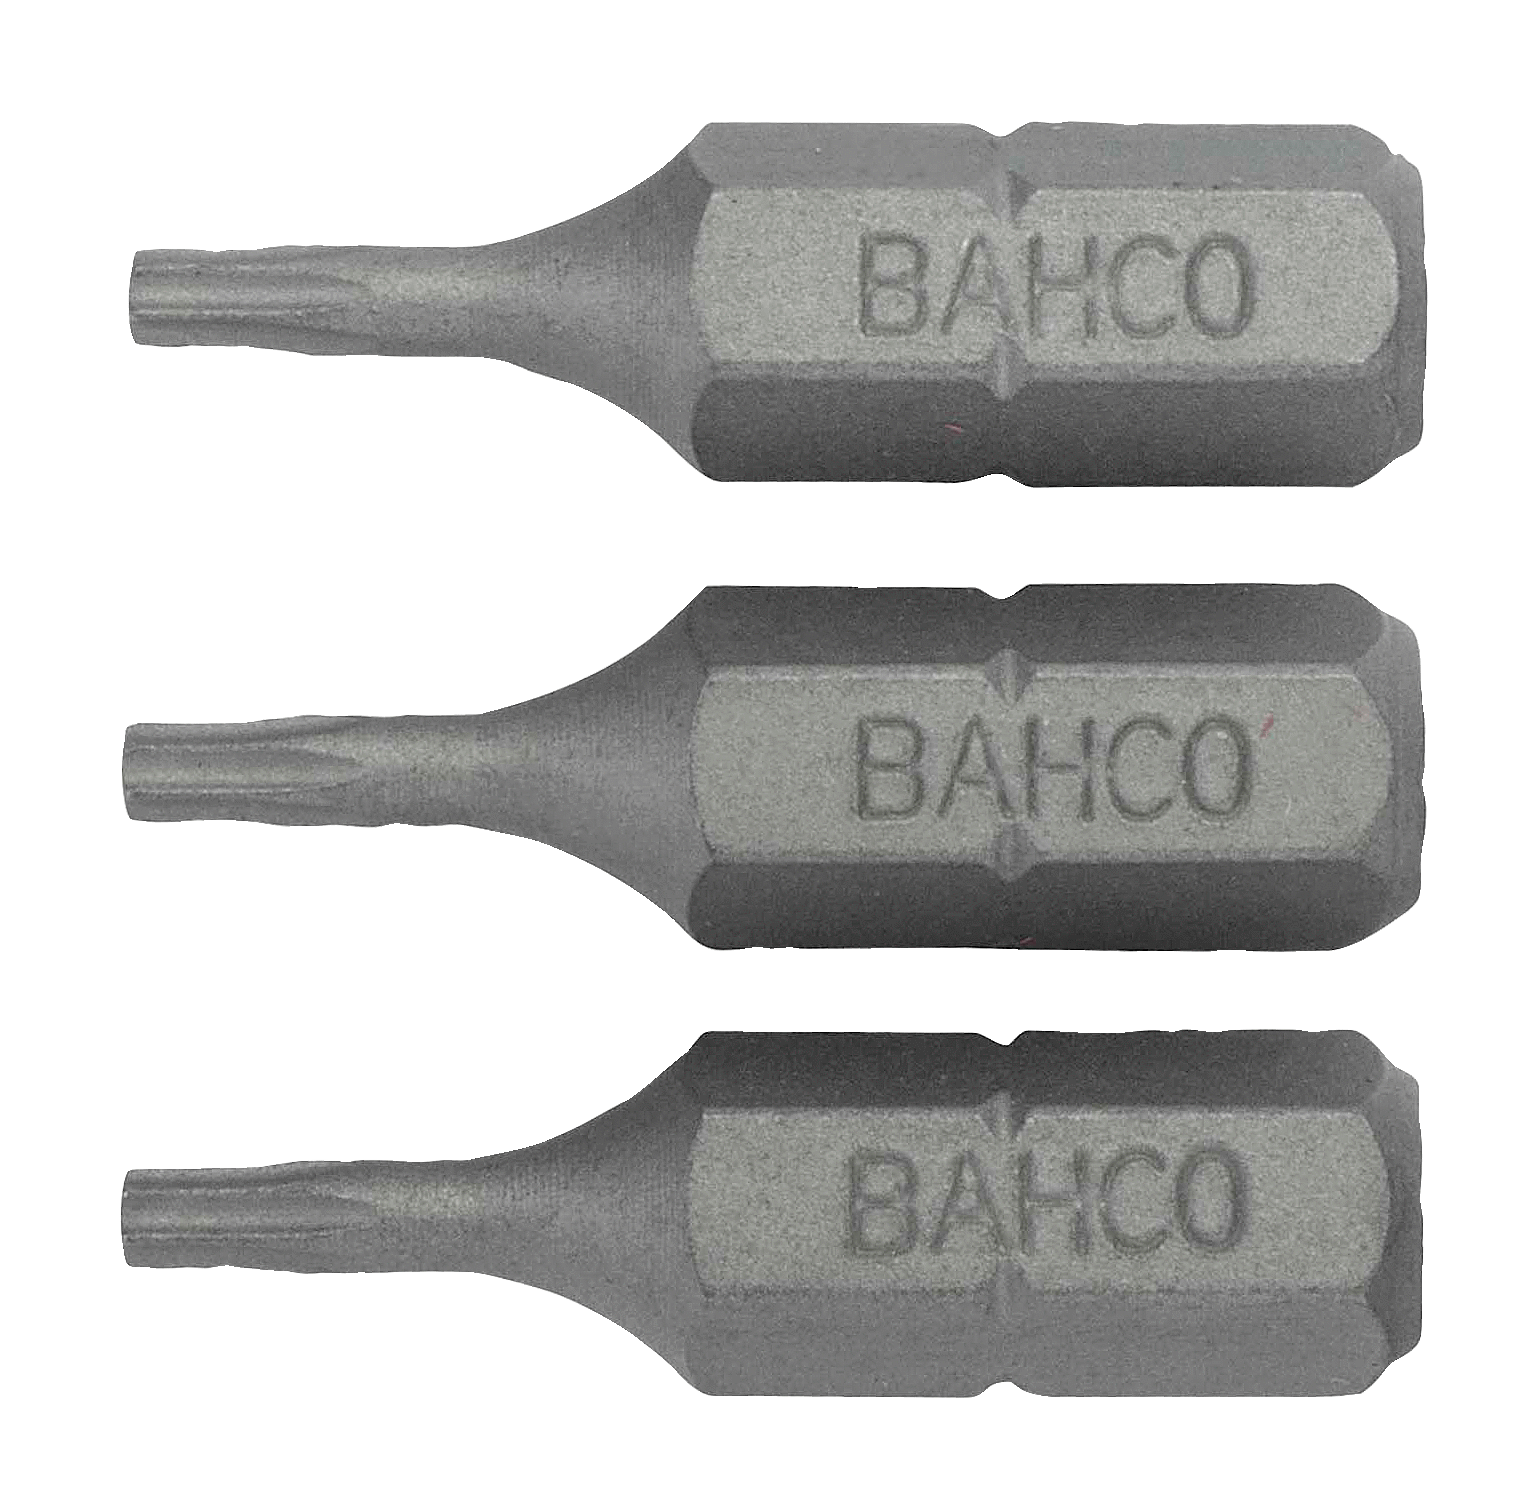 картинка Стандартные биты для отверток Torx® TR, 25 мм BAHCO 59S/TR40-3P от магазина "Элит-инструмент"